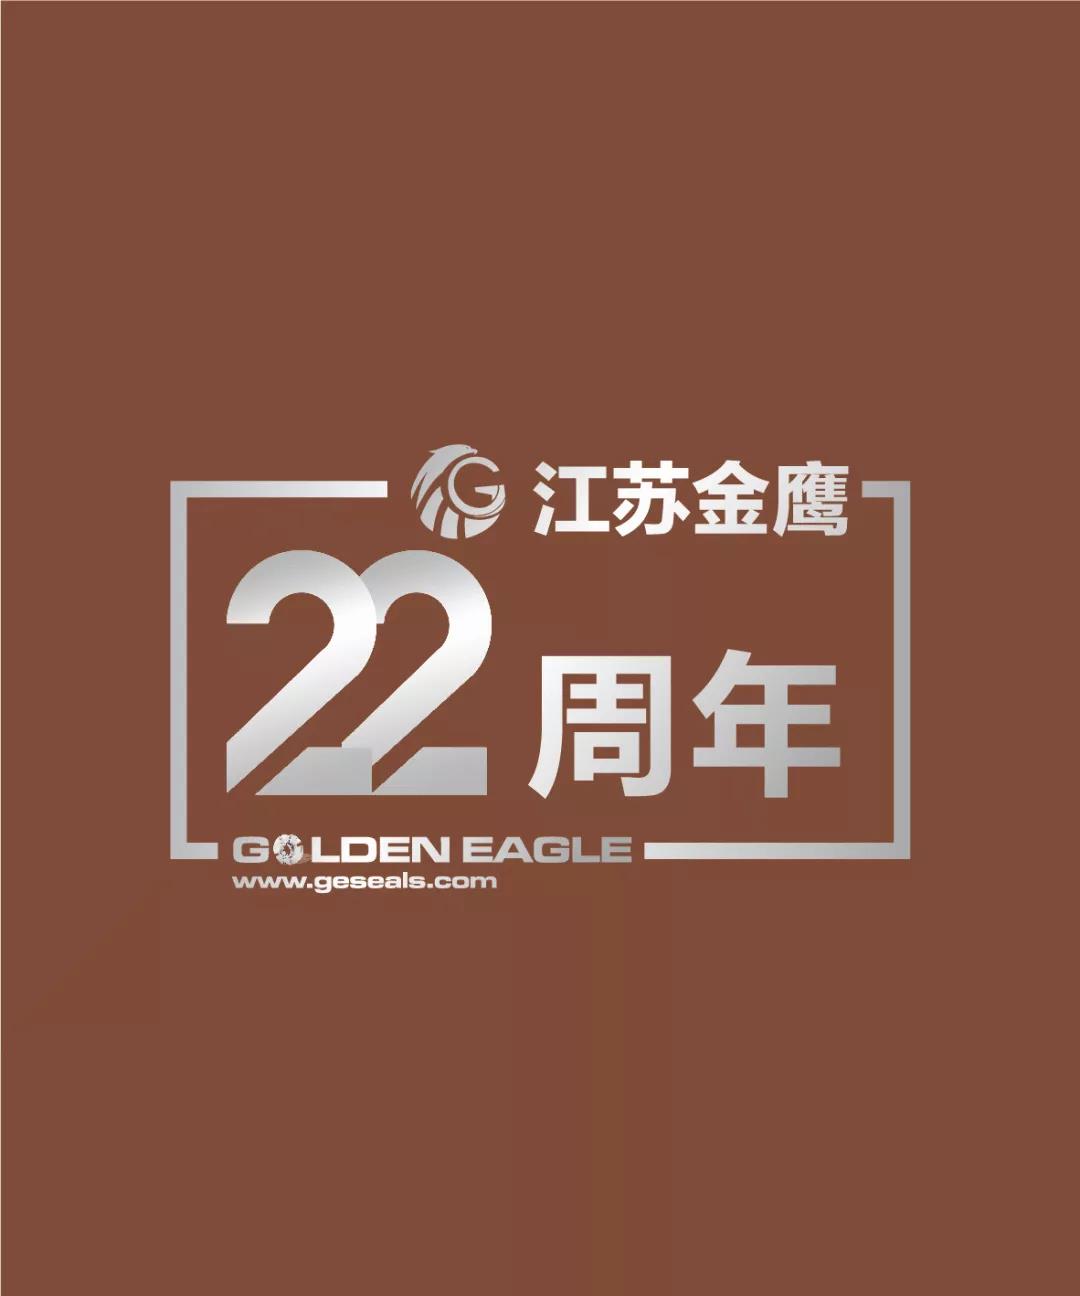 江蘇金鷹流體機械有限公司22周年生日快樂！